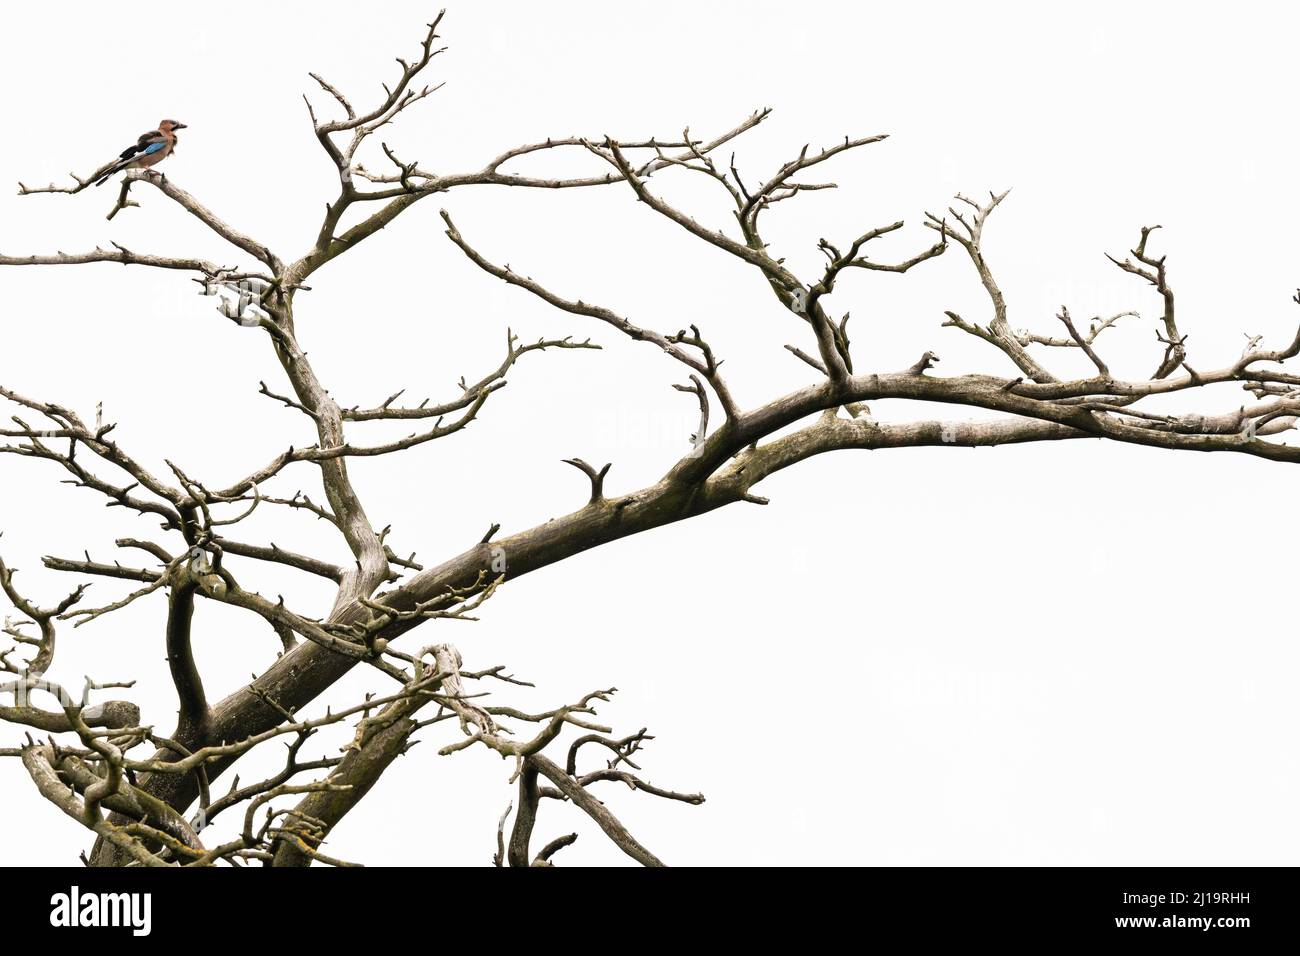 Eurasischer eichelhäher (Garrulus glandarius), der auf einem toten Baum sitzt, JuodkrantÄ, Kurische Nehrung, Klaipeda, Litauen Stockfoto